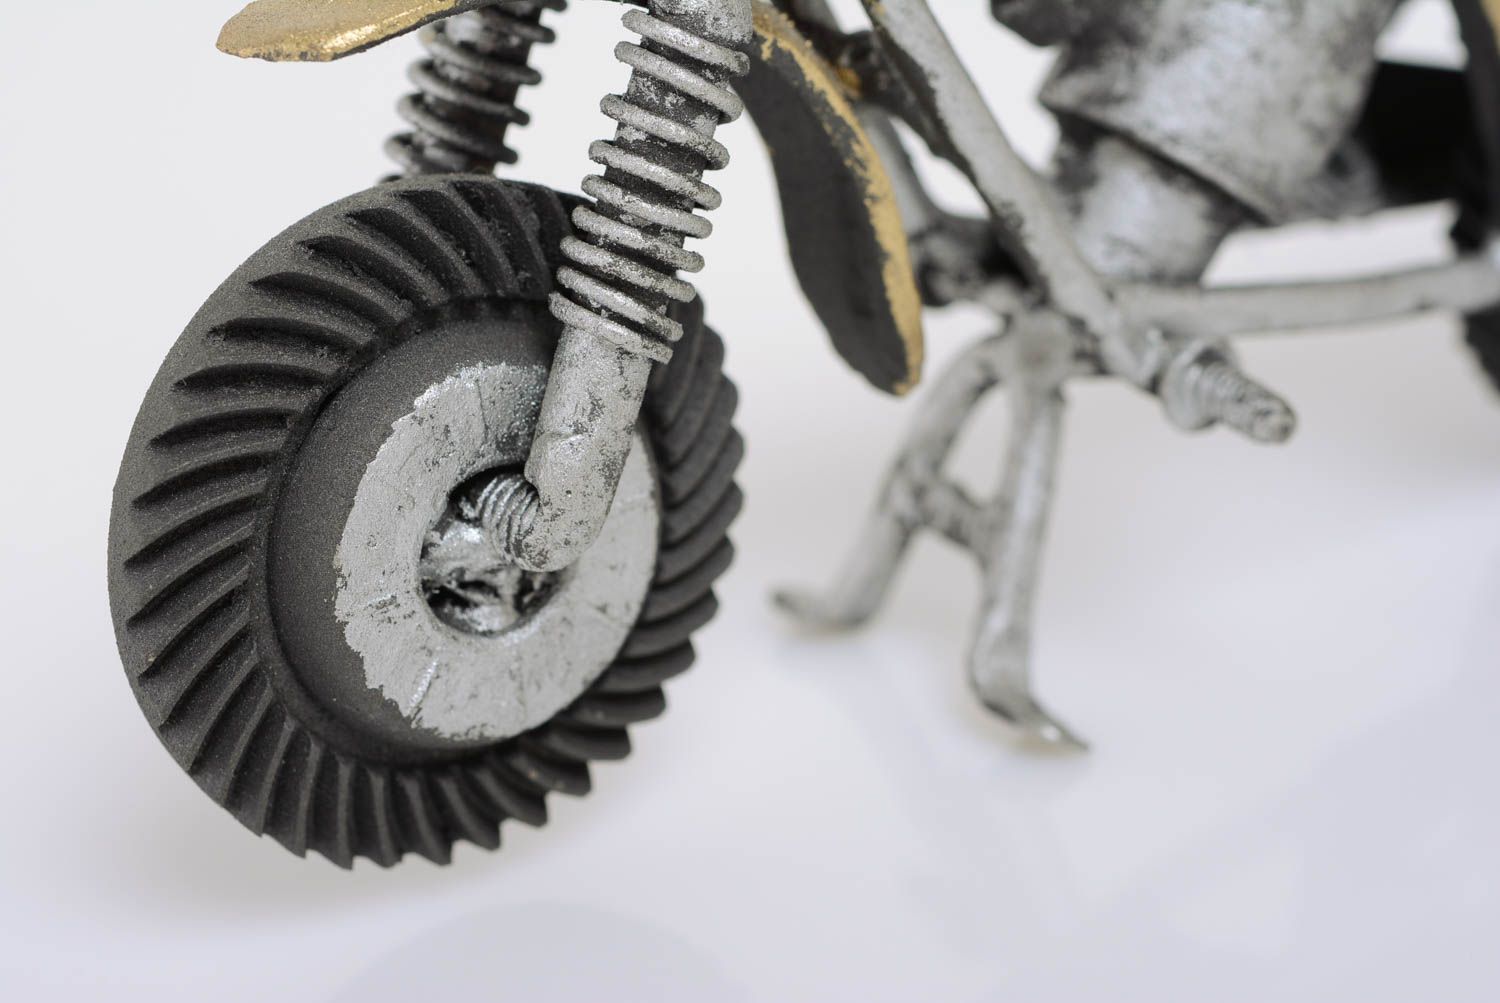 Металлическая статуэтка мотоцикла ручной работы в стиле техно арт красивая оригинальная фото 2